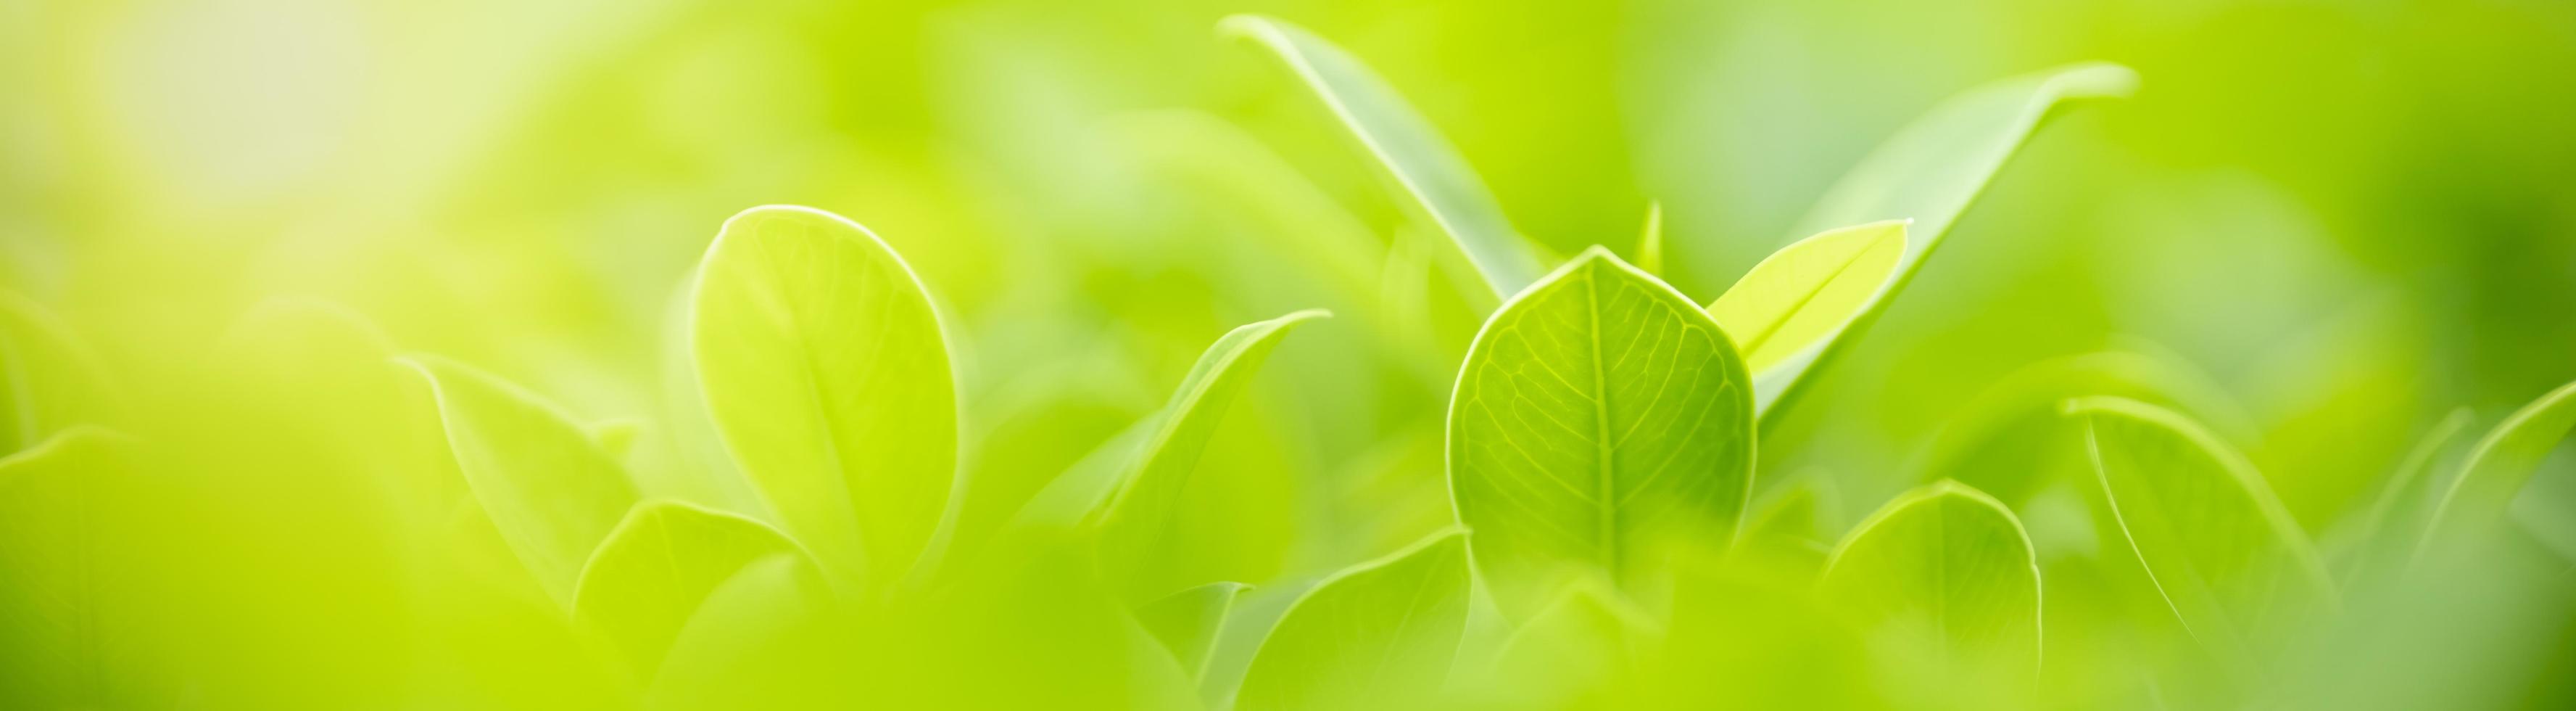 close-up da folha verde vista da natureza no fundo de vegetação turva sob a luz do sol com bokeh e copie o espaço usando como plano de fundo a paisagem de plantas naturais, conceito de capa de ecologia. foto